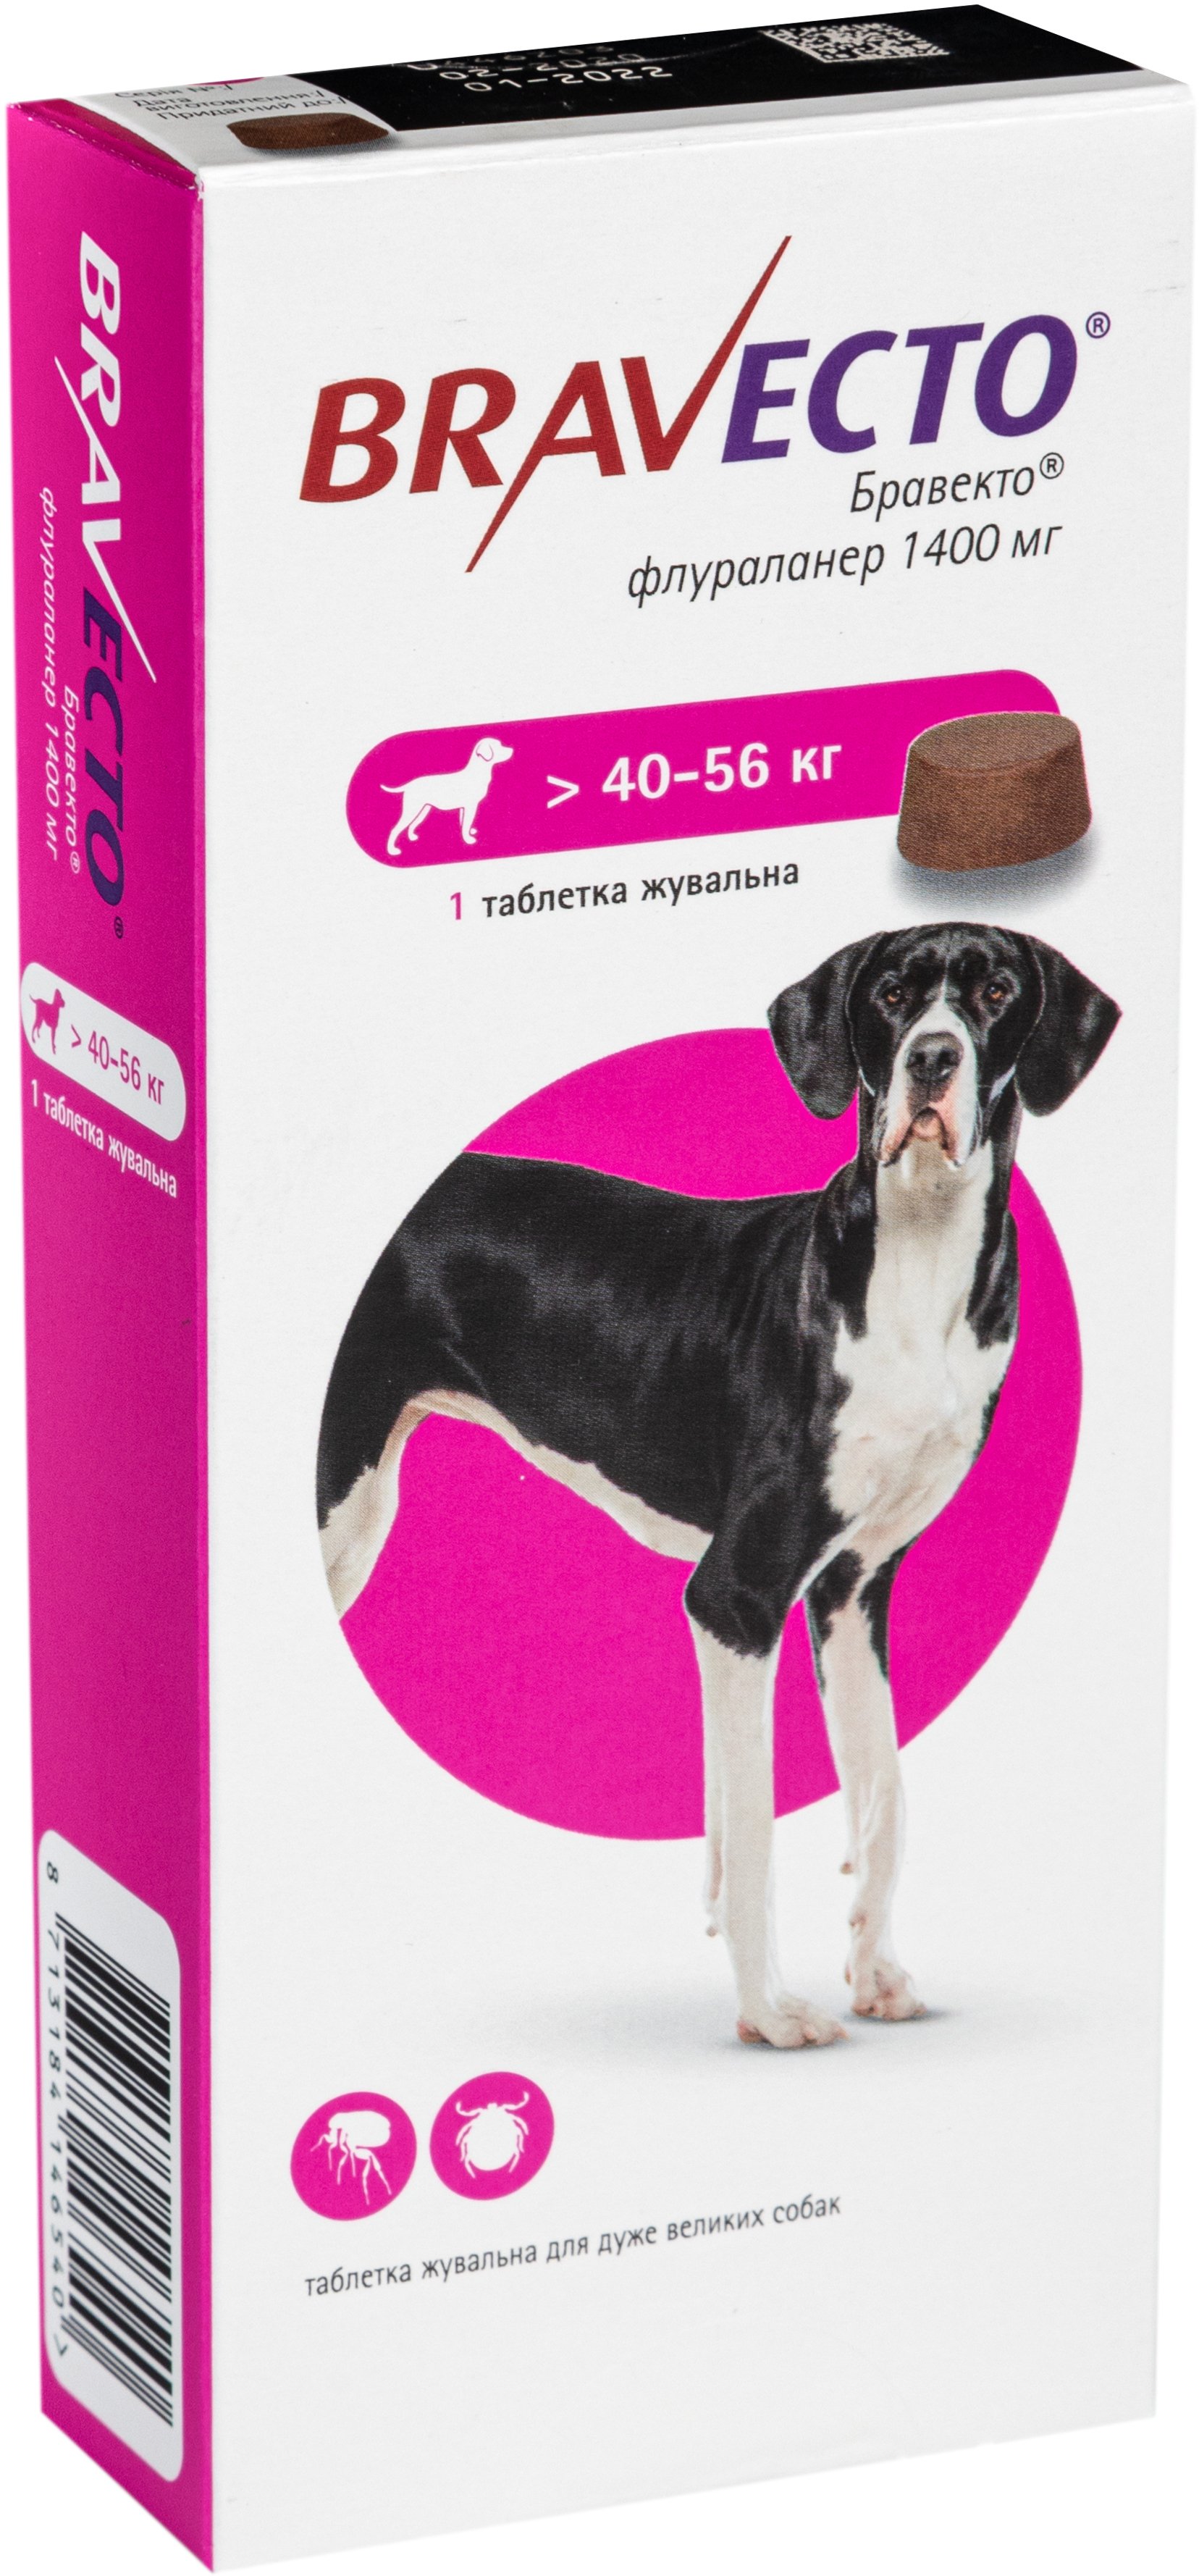 Жувальна пігулка Bravecto від бліх і кліщів для собак з вагою 40-56 кг - фото 2